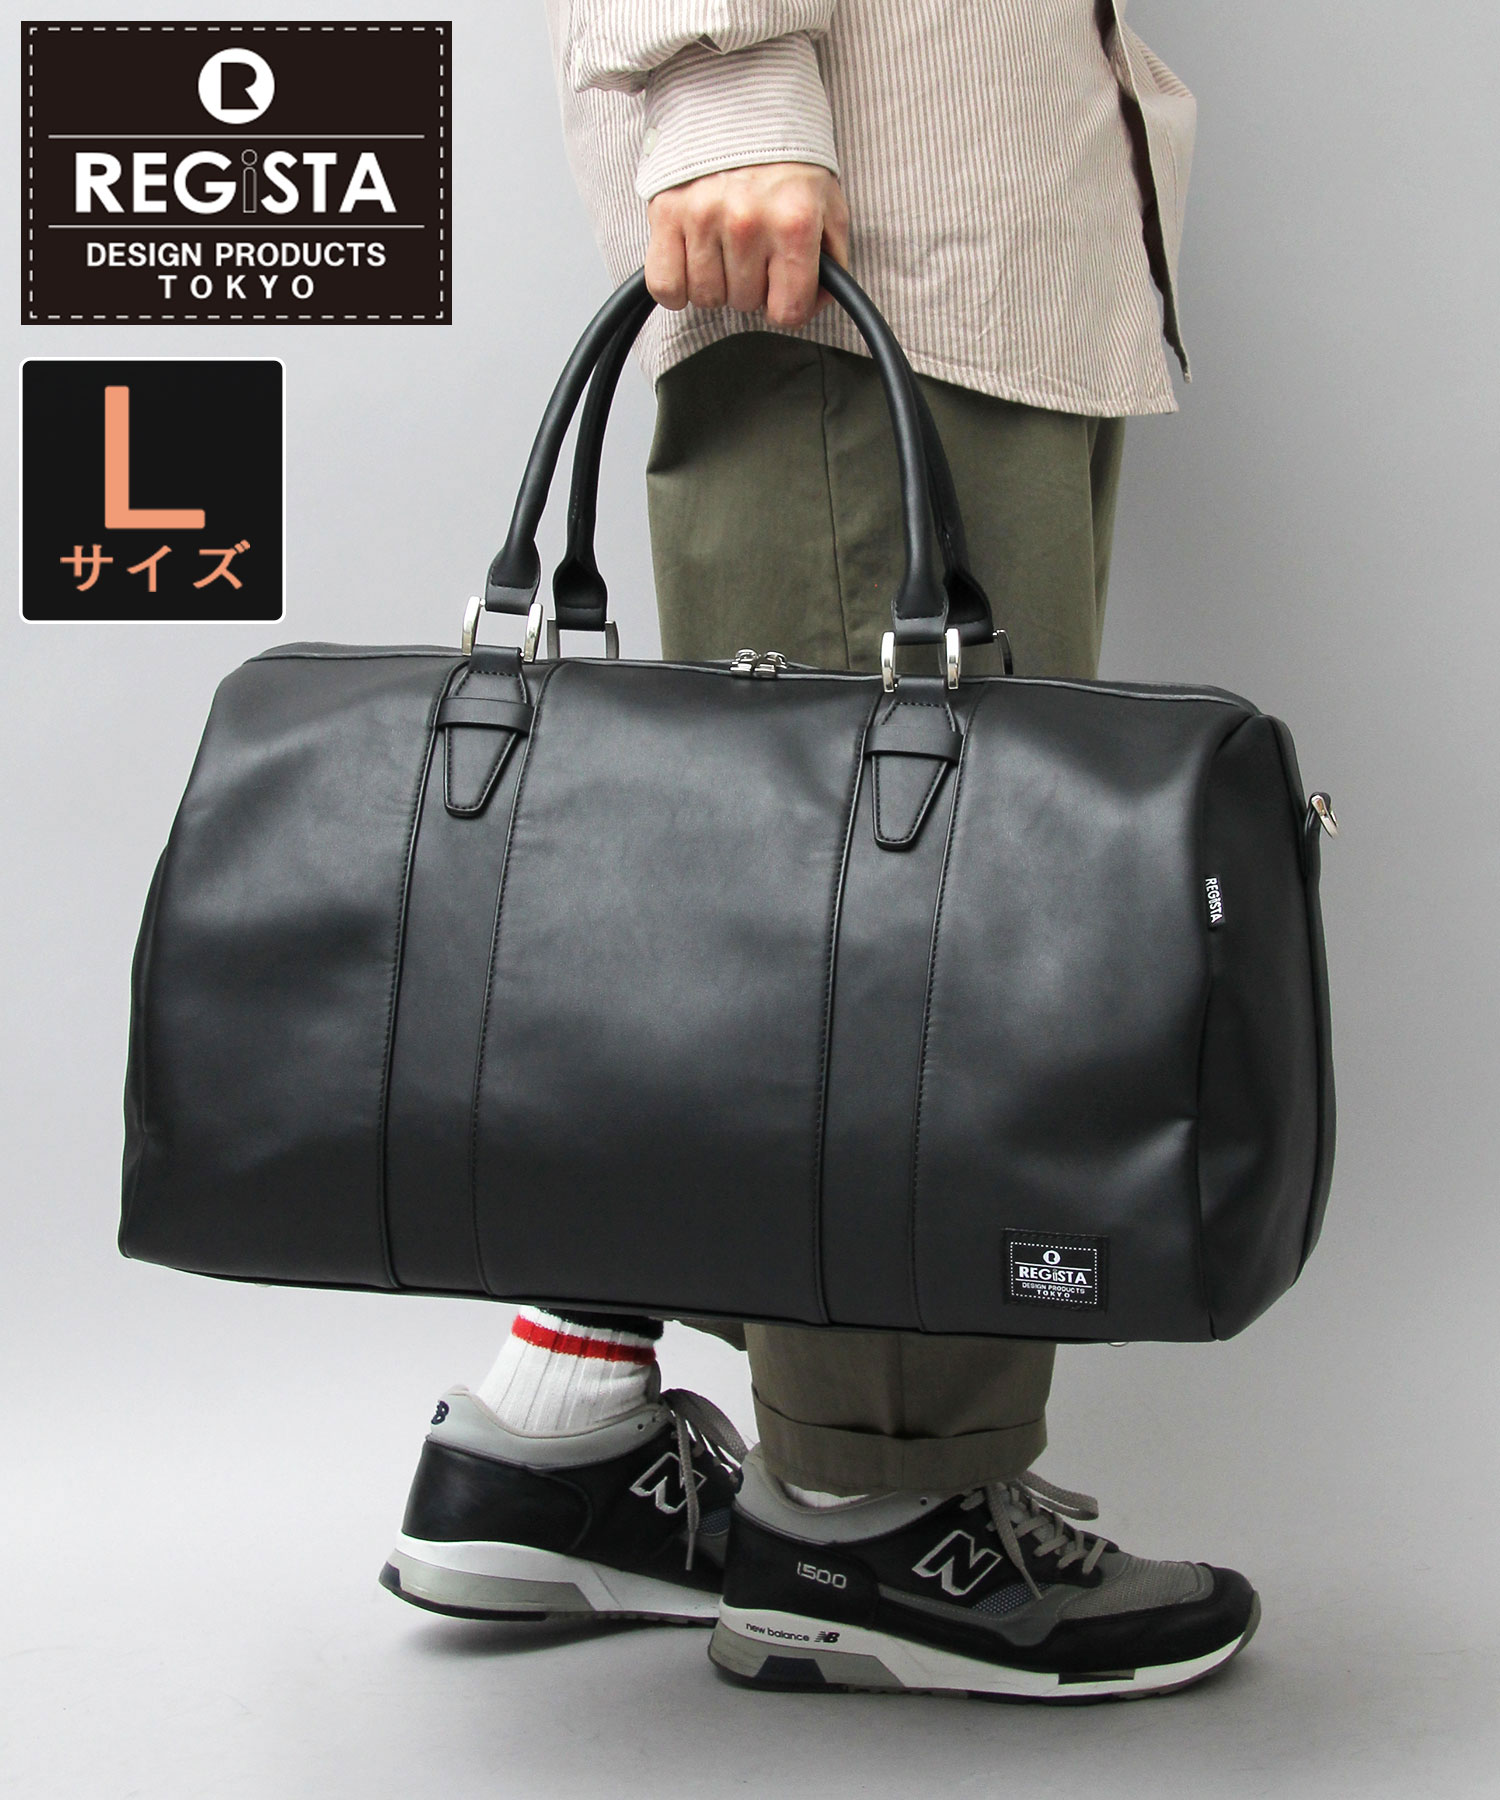 REGiSTA / レジスタ / フェイクレザー ボストンバッグ / ビッグサイズ / 旅行バッグ